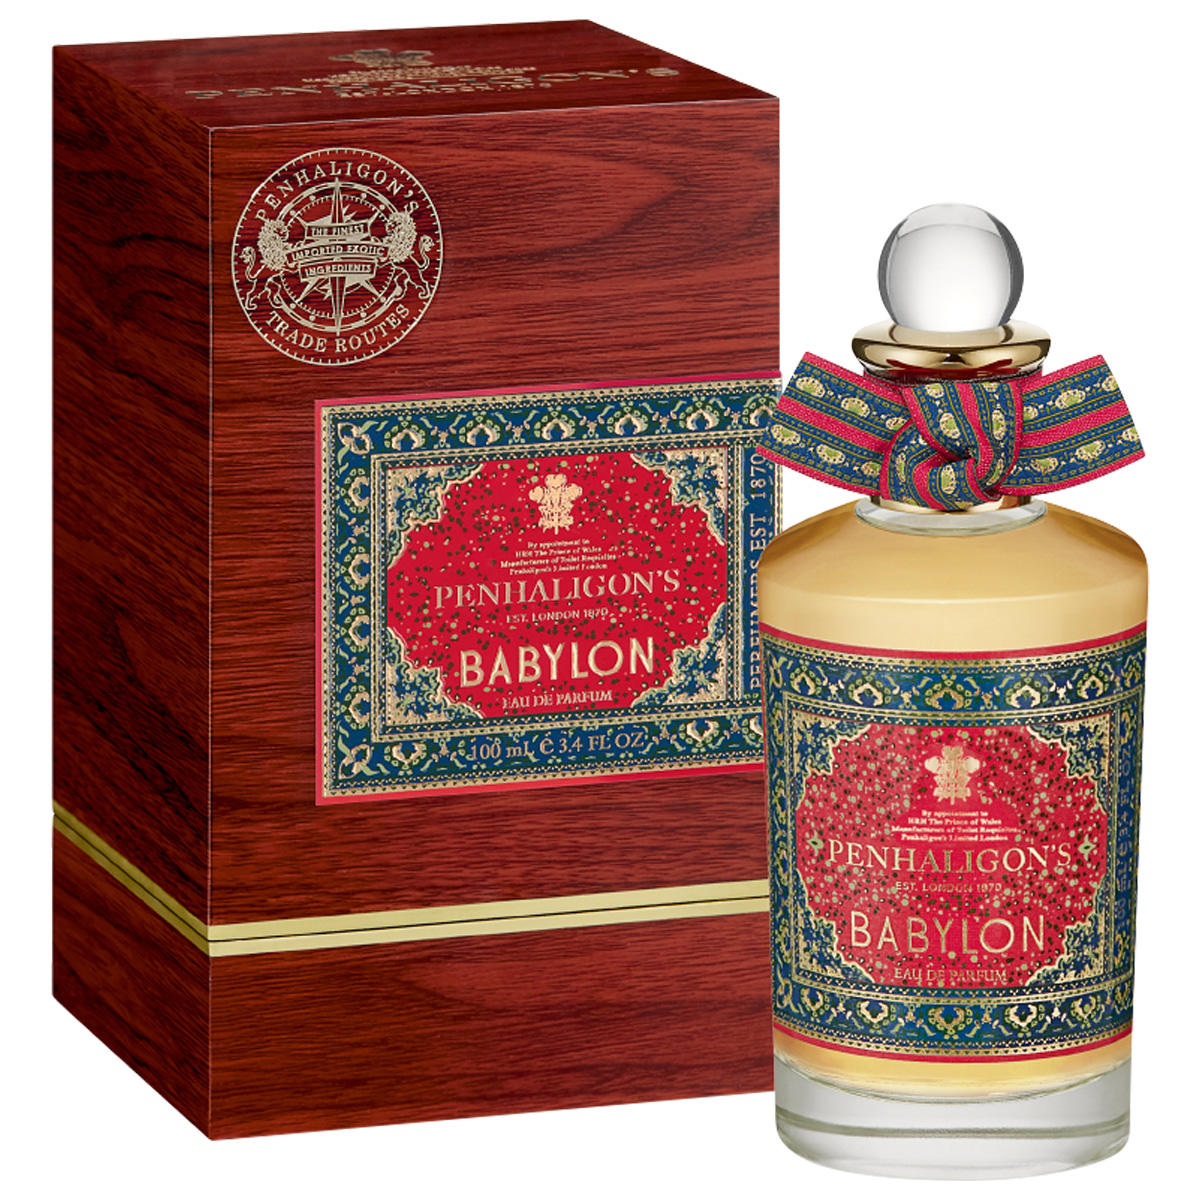 PENHALIGON'S Trade Routes Babylon Eau de Parfum 100 ml - 2